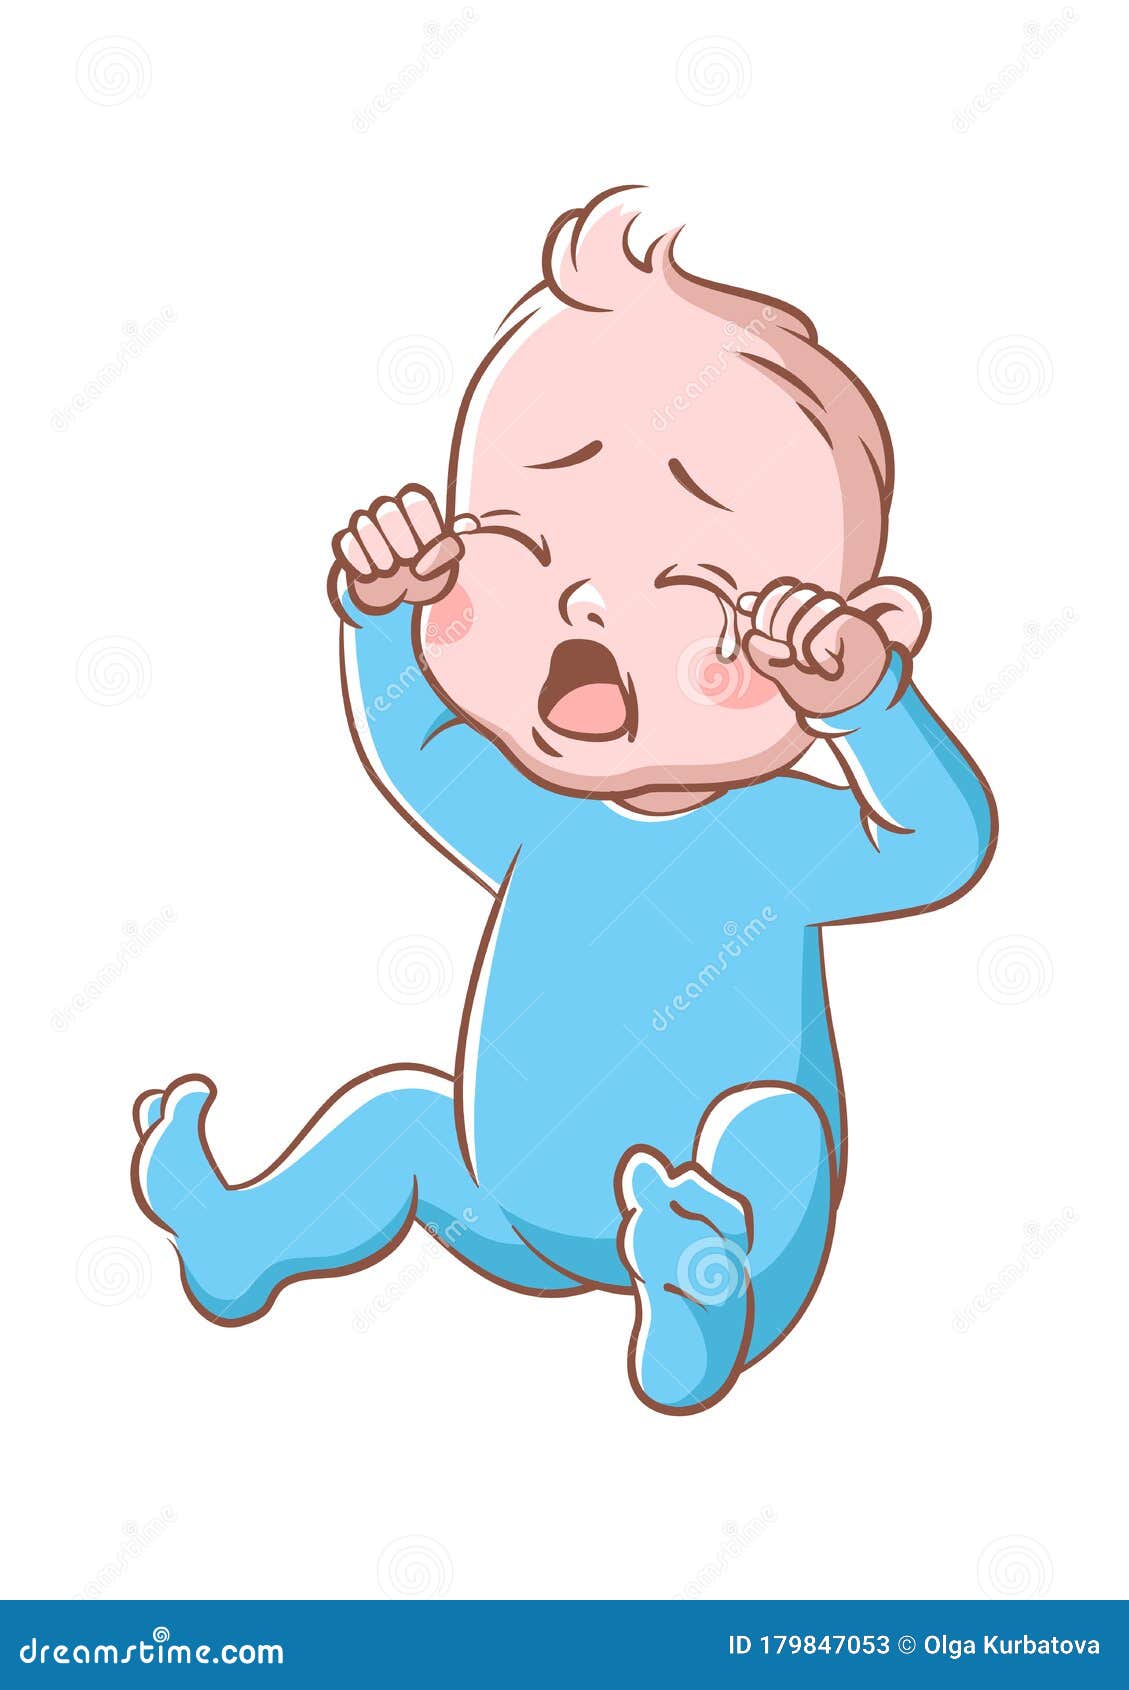 desenho animado bebê está chorando, ilustração vetorial 3692209